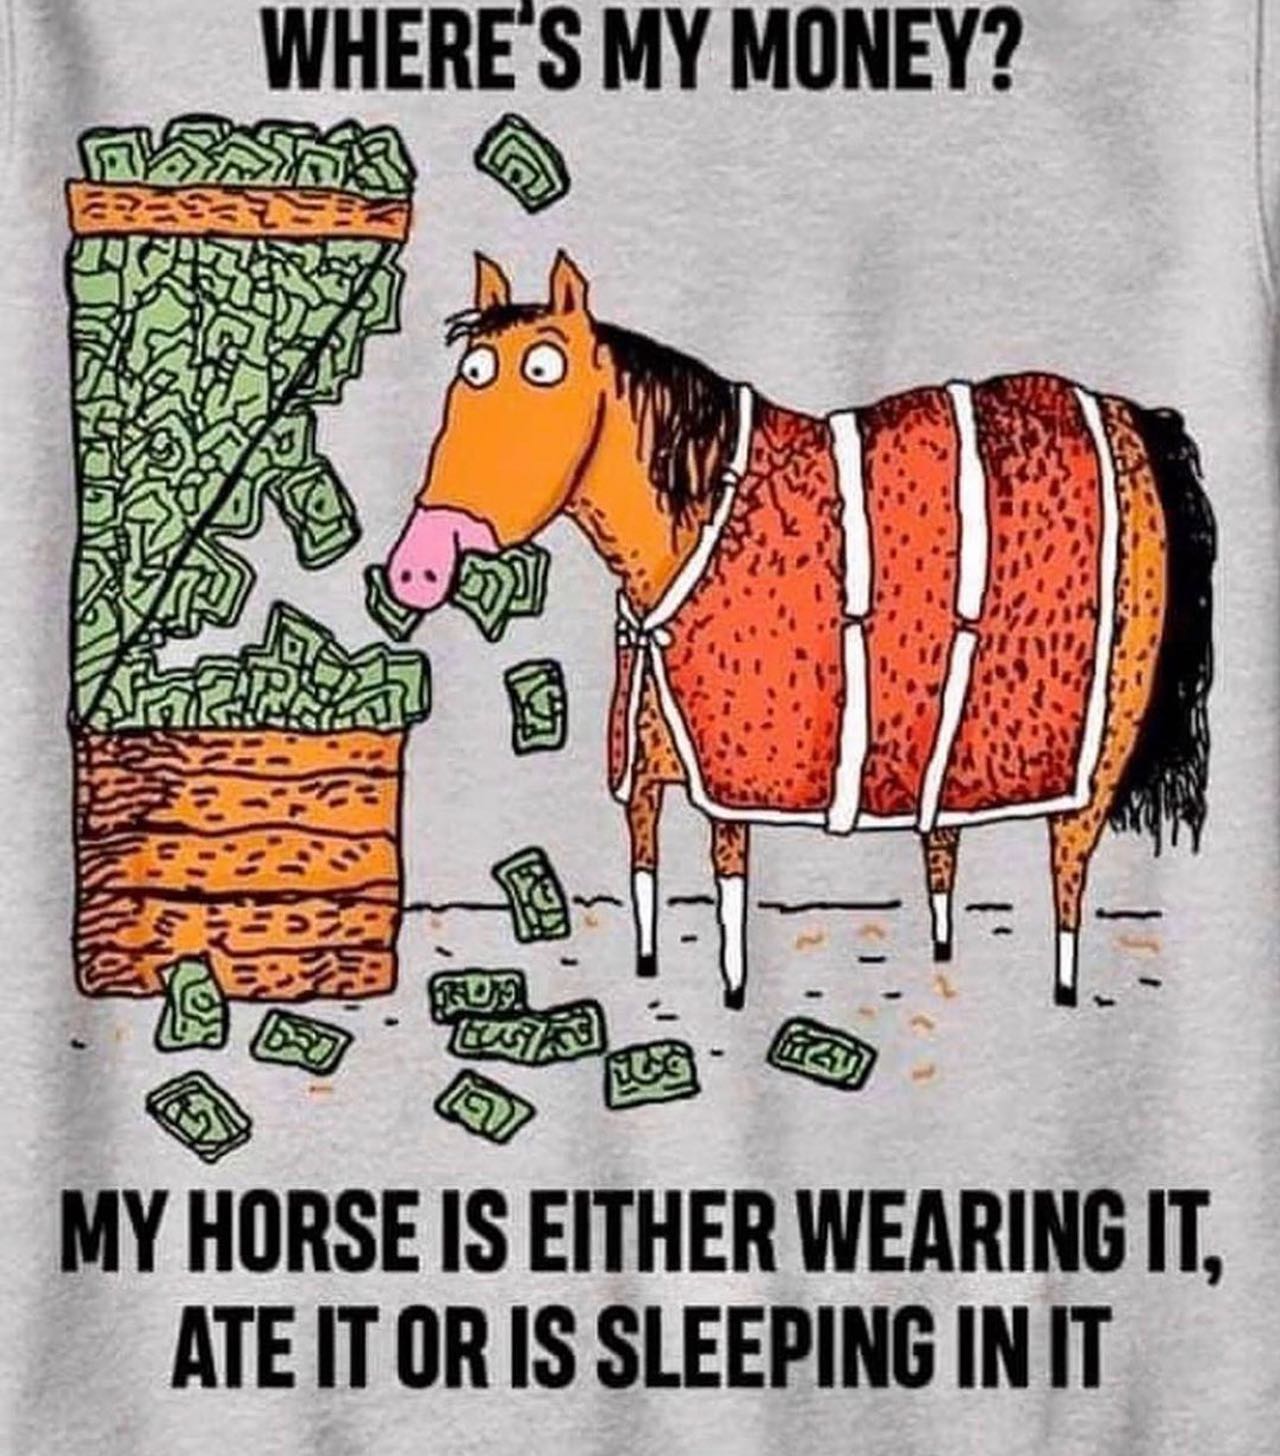 Horse Money